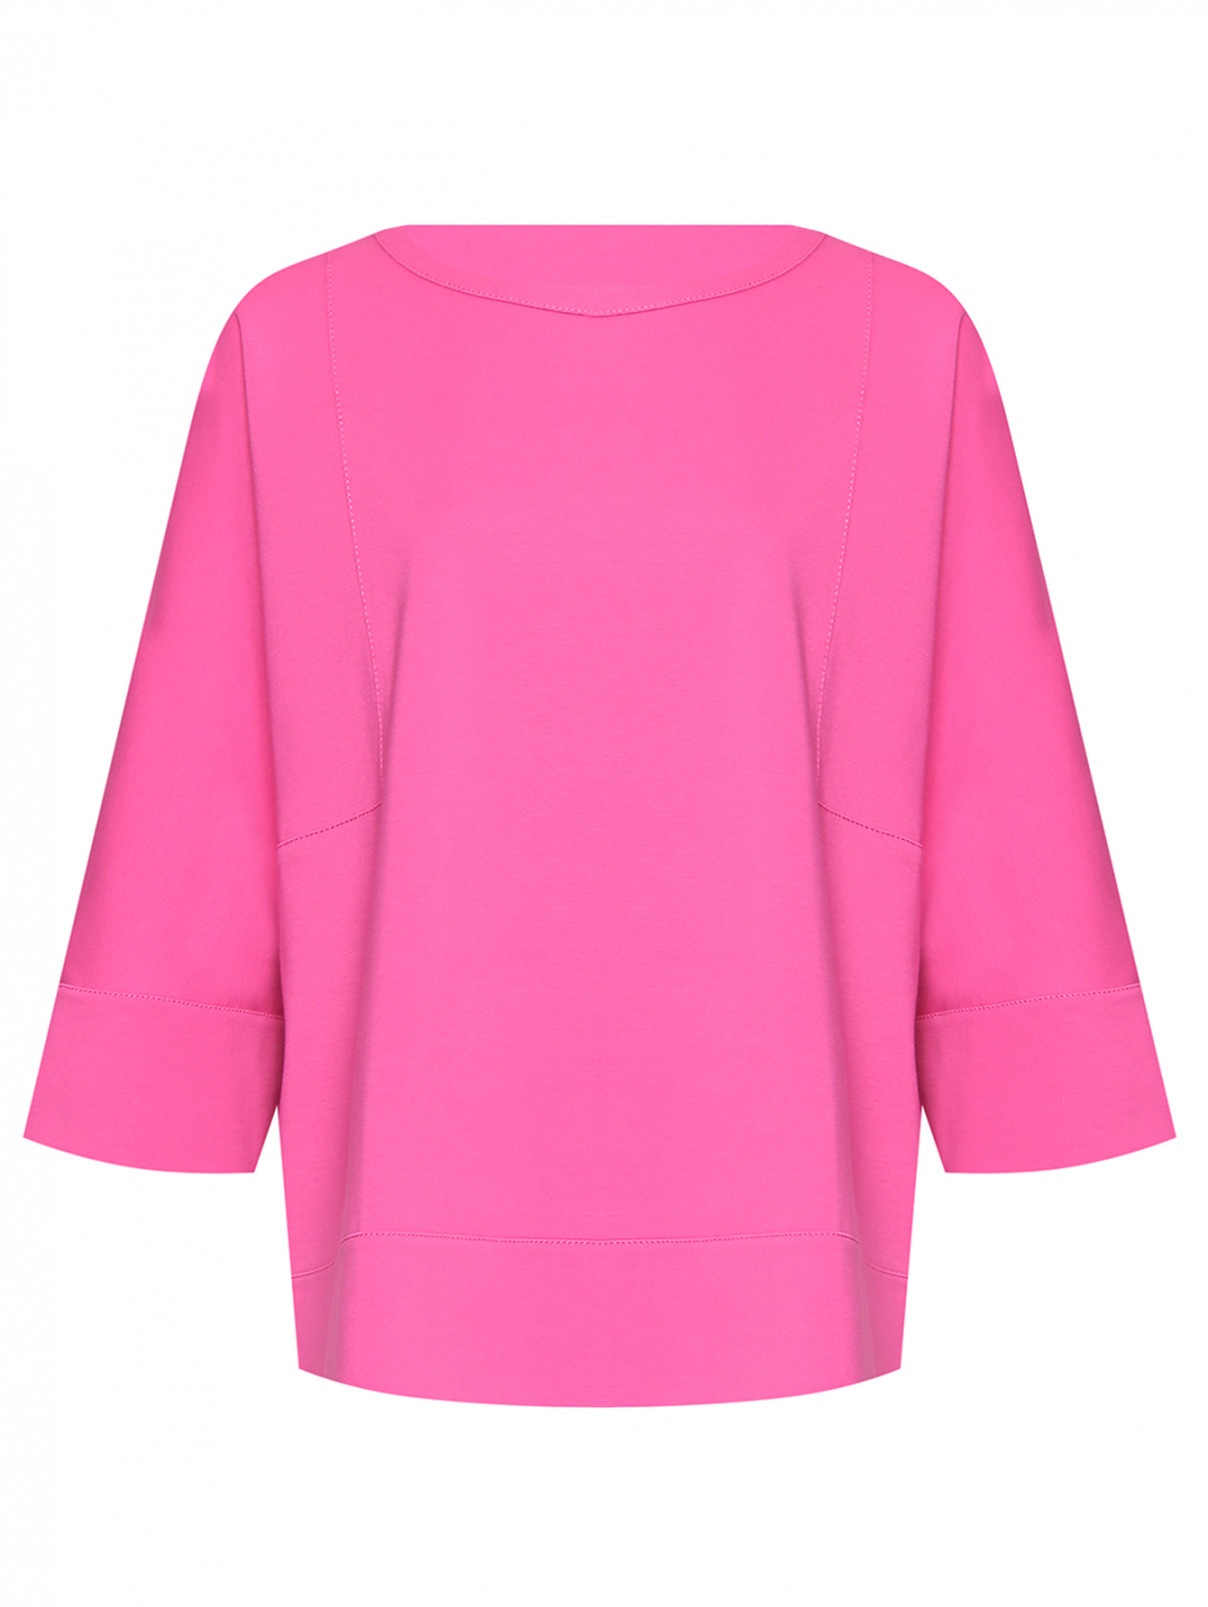 Толстовка из вискозы с контрастным швом Marina Rinaldi  –  Общий вид  – Цвет:  Розовый